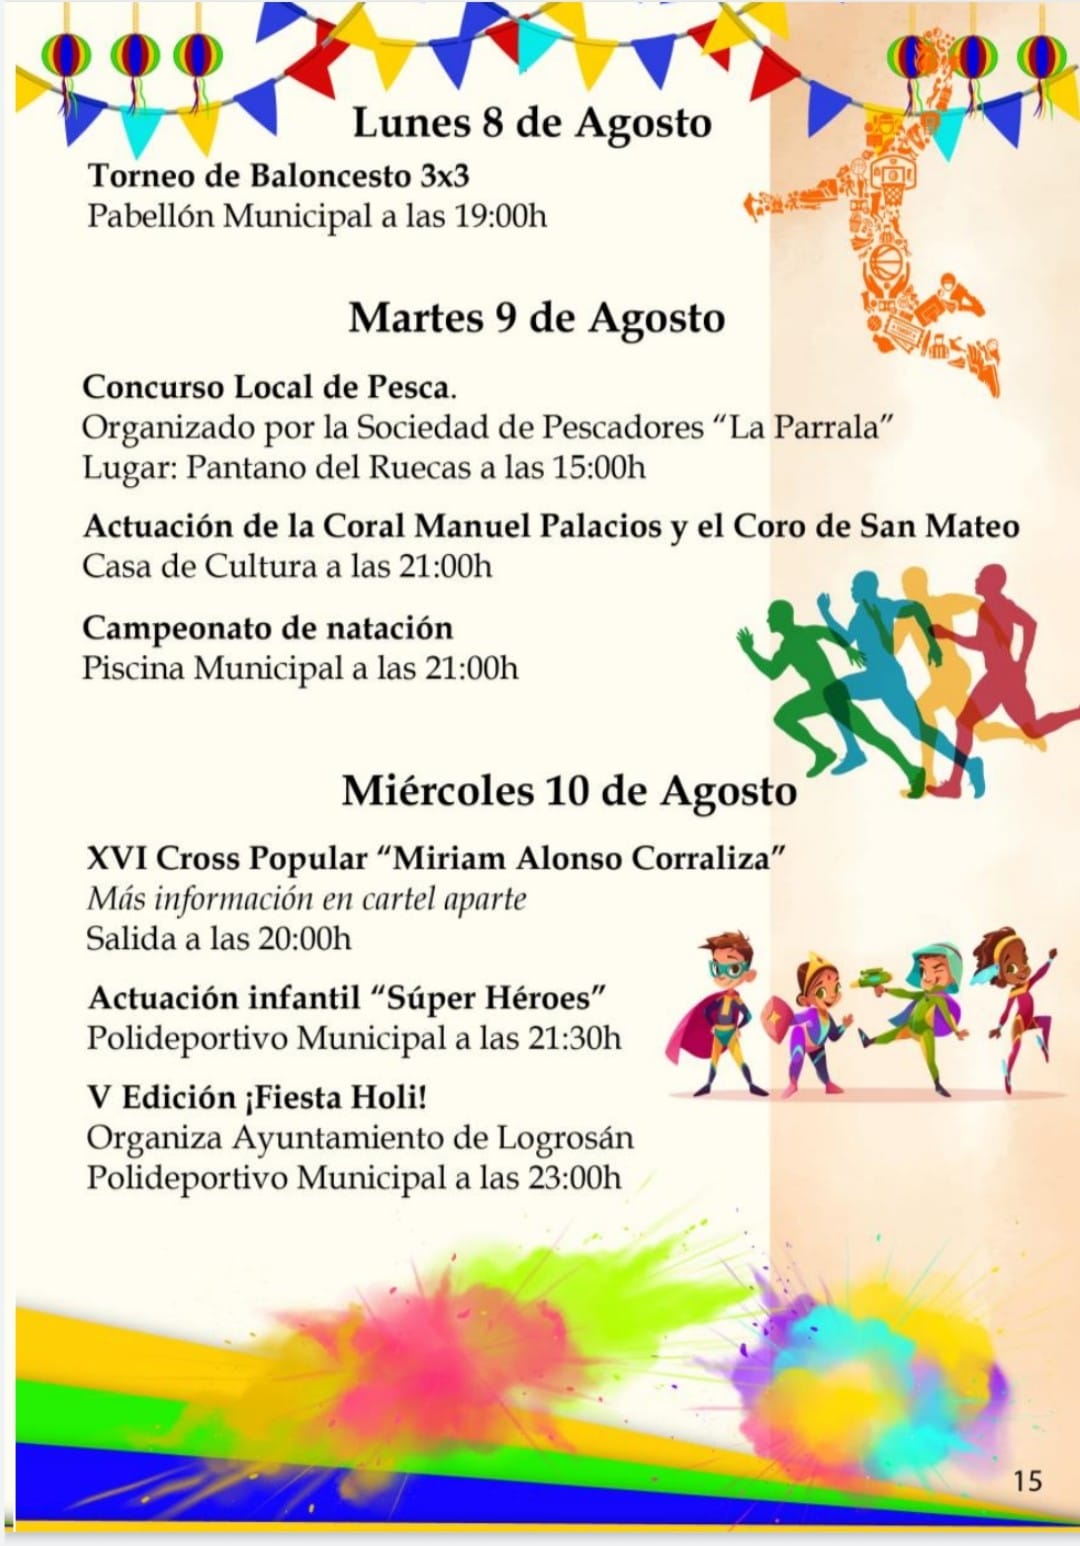 Fiestas patronales en honor a la Virgen del Consuelo (2022) - Logrosán (Cáceres) 7